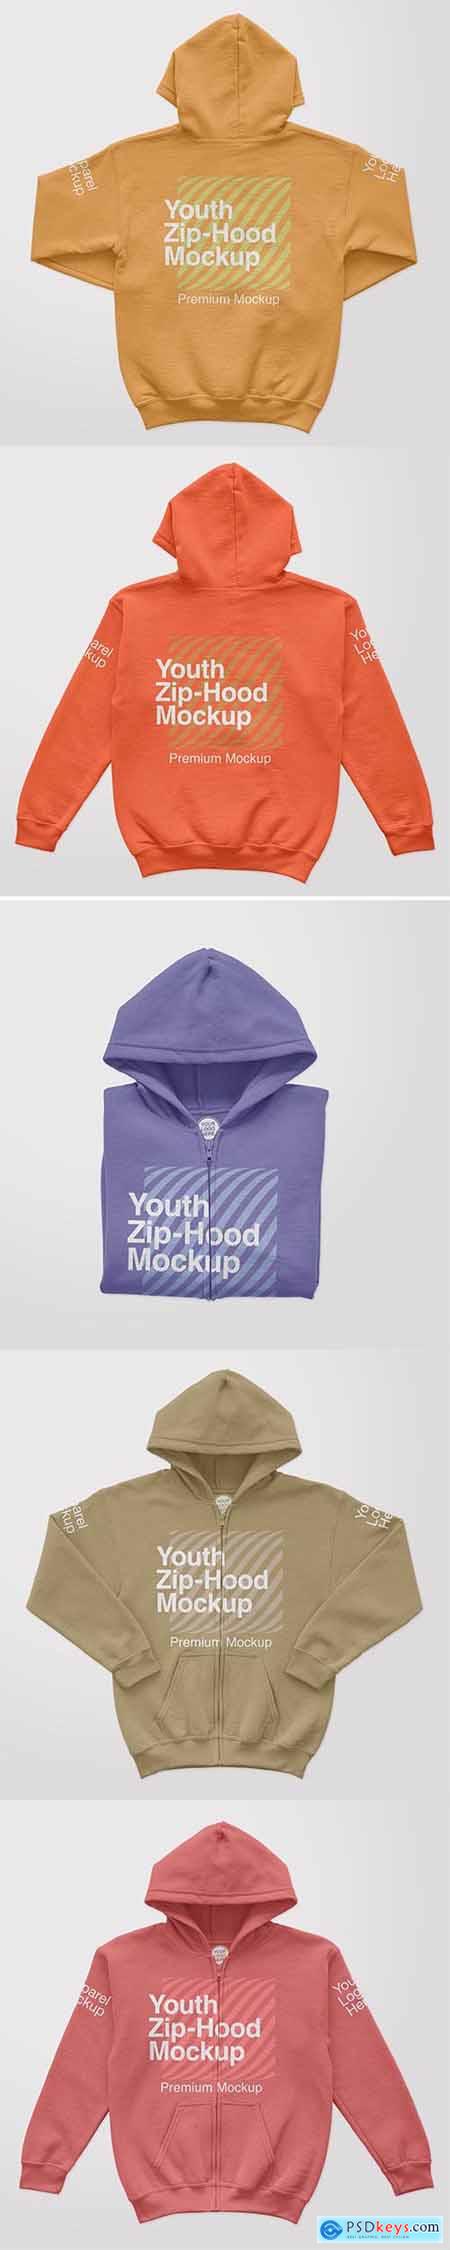 Youth ziphood mockup